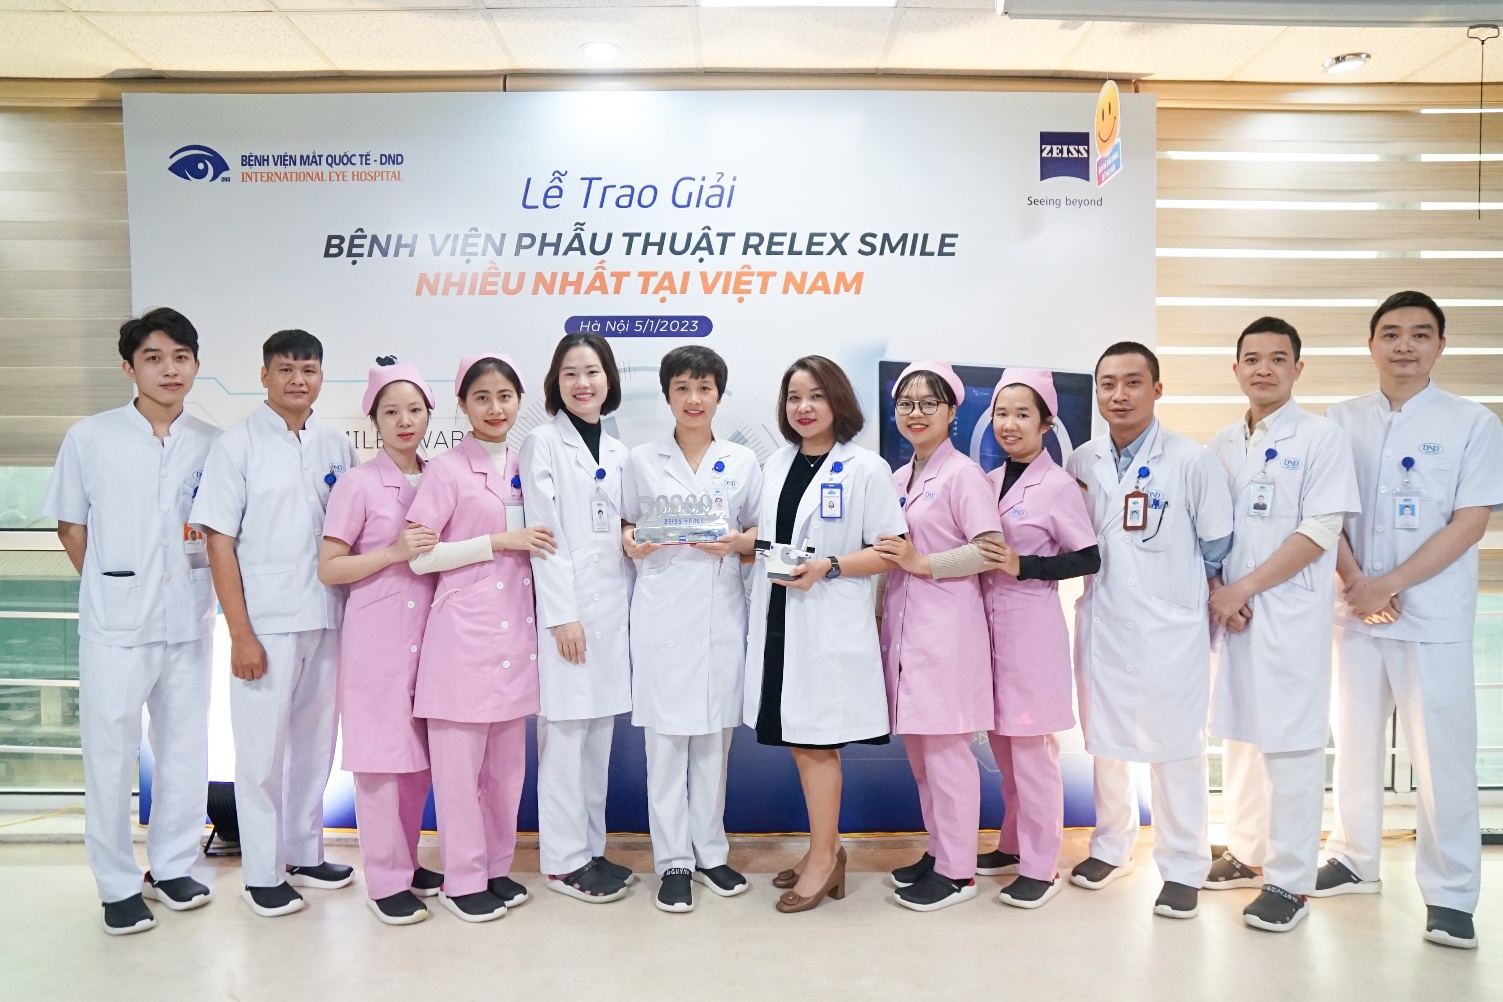 Bệnh viện Mắt Quốc tế DND nhận giải “Bệnh viện phẫu thuật ReLEx SMILE bằng phương pháp của Zeiss nhiều nhất tại Việt Nam” - Ảnh 3.